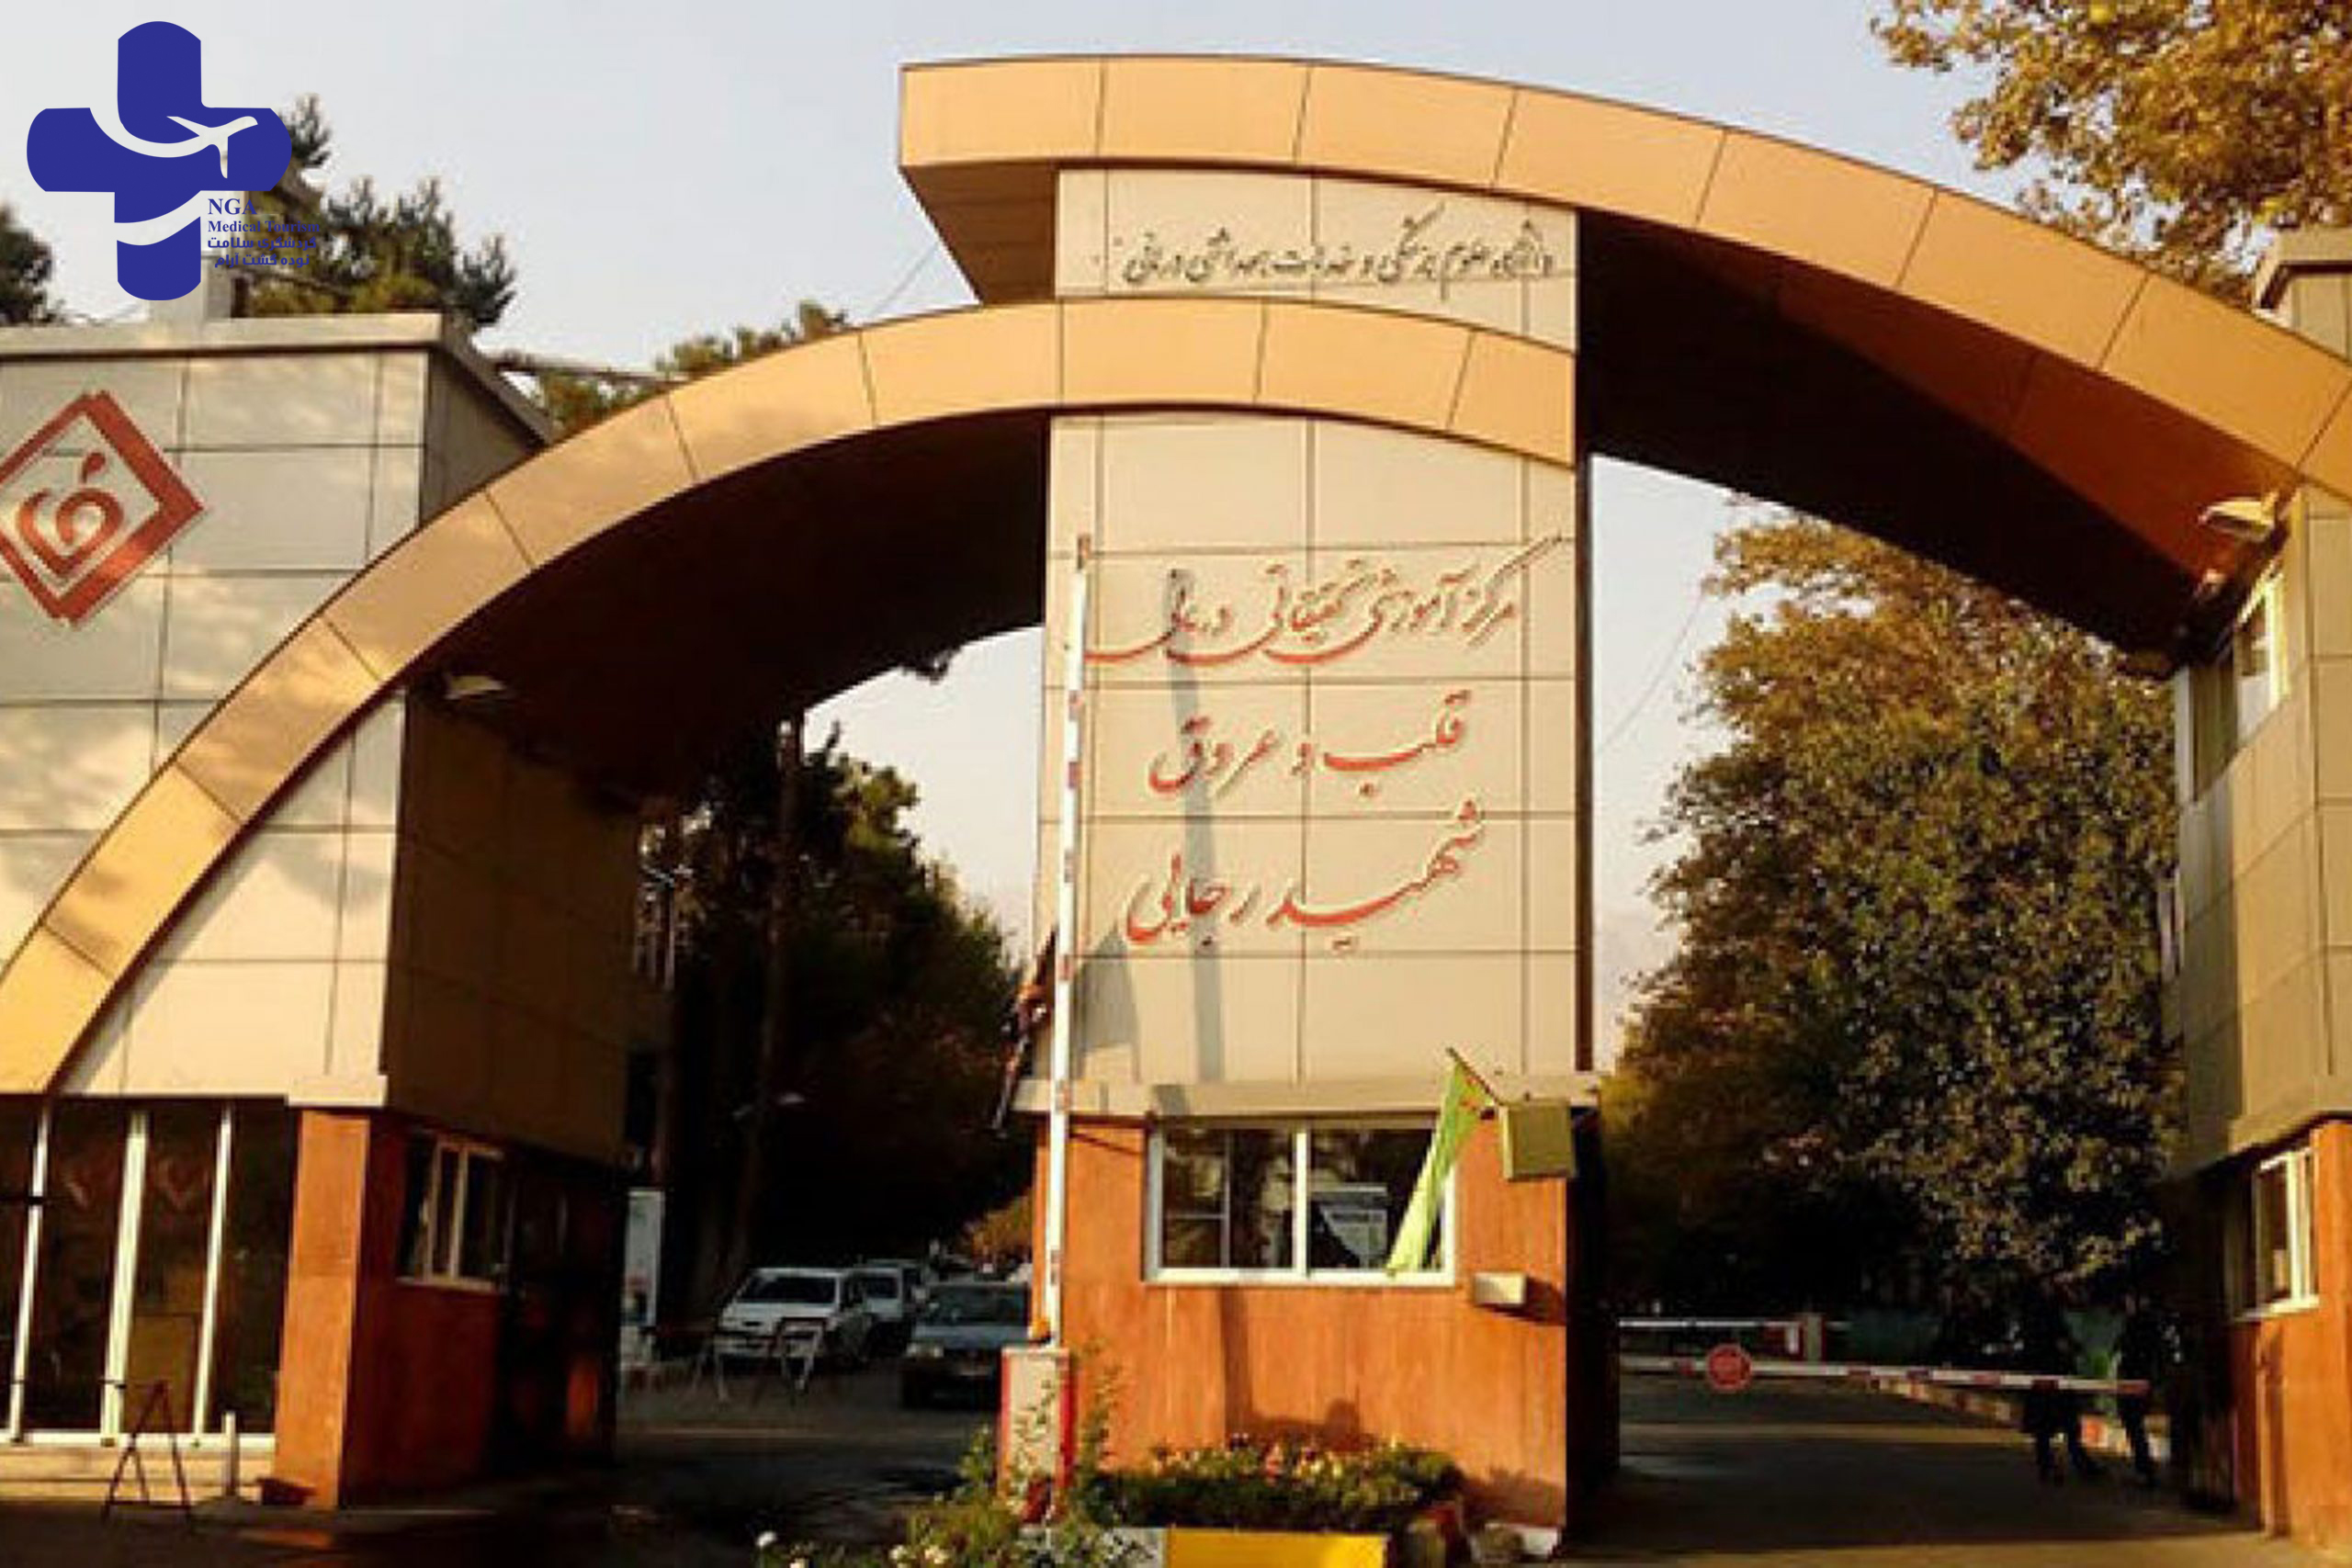 shahid rajaee hospital in iran / tehran